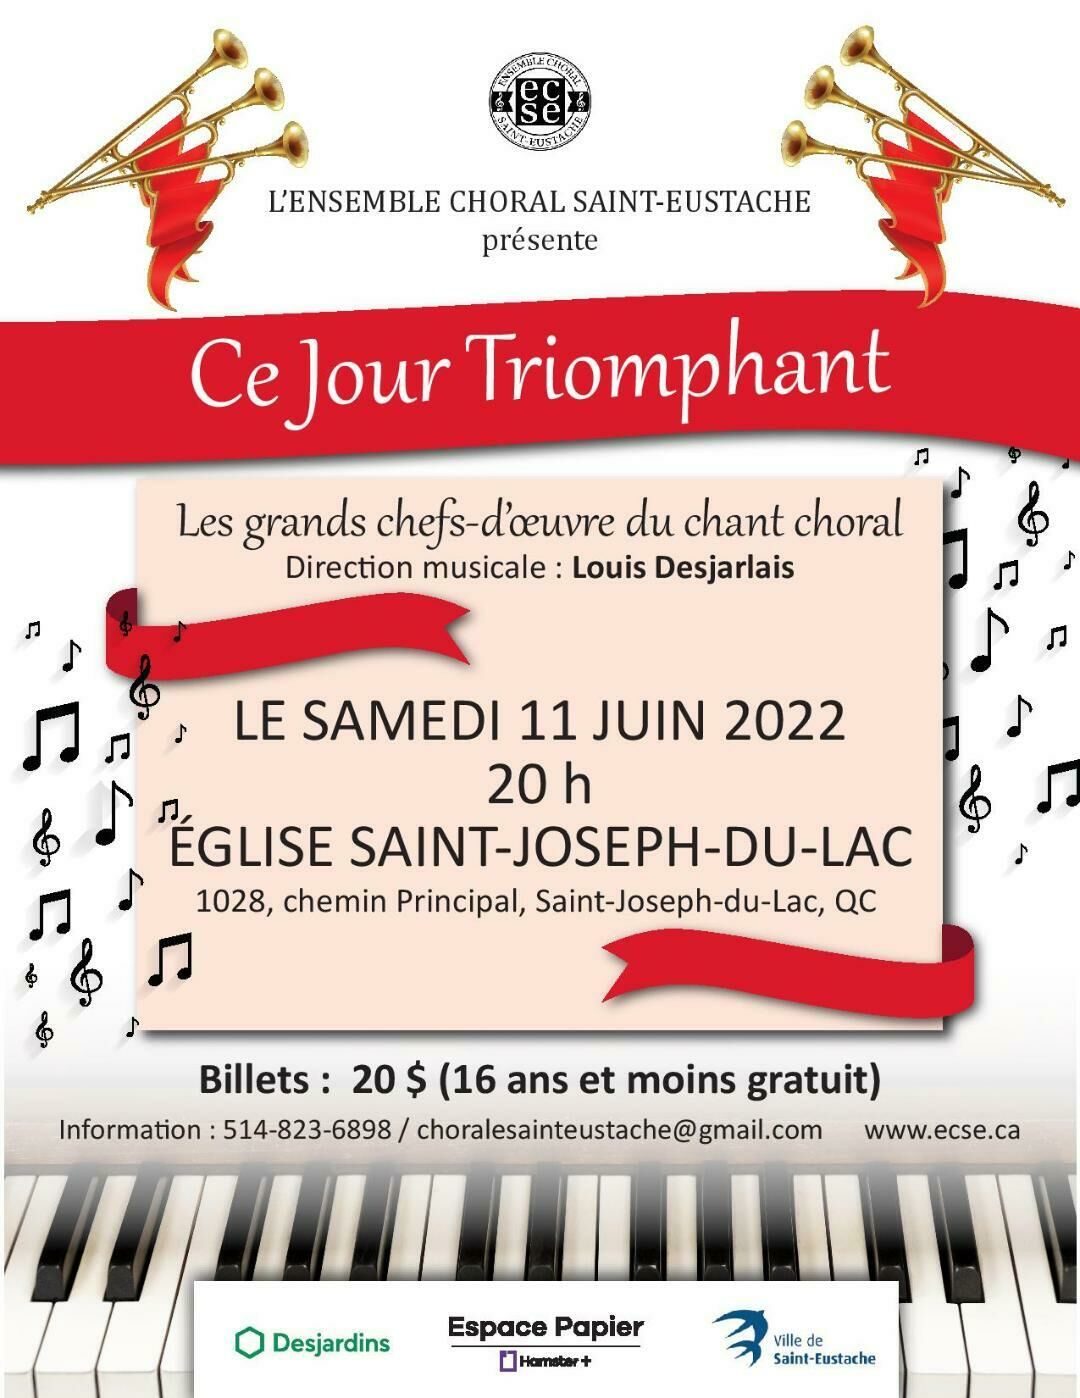 Ensemble choral Saint-Eustache/Juin 2022